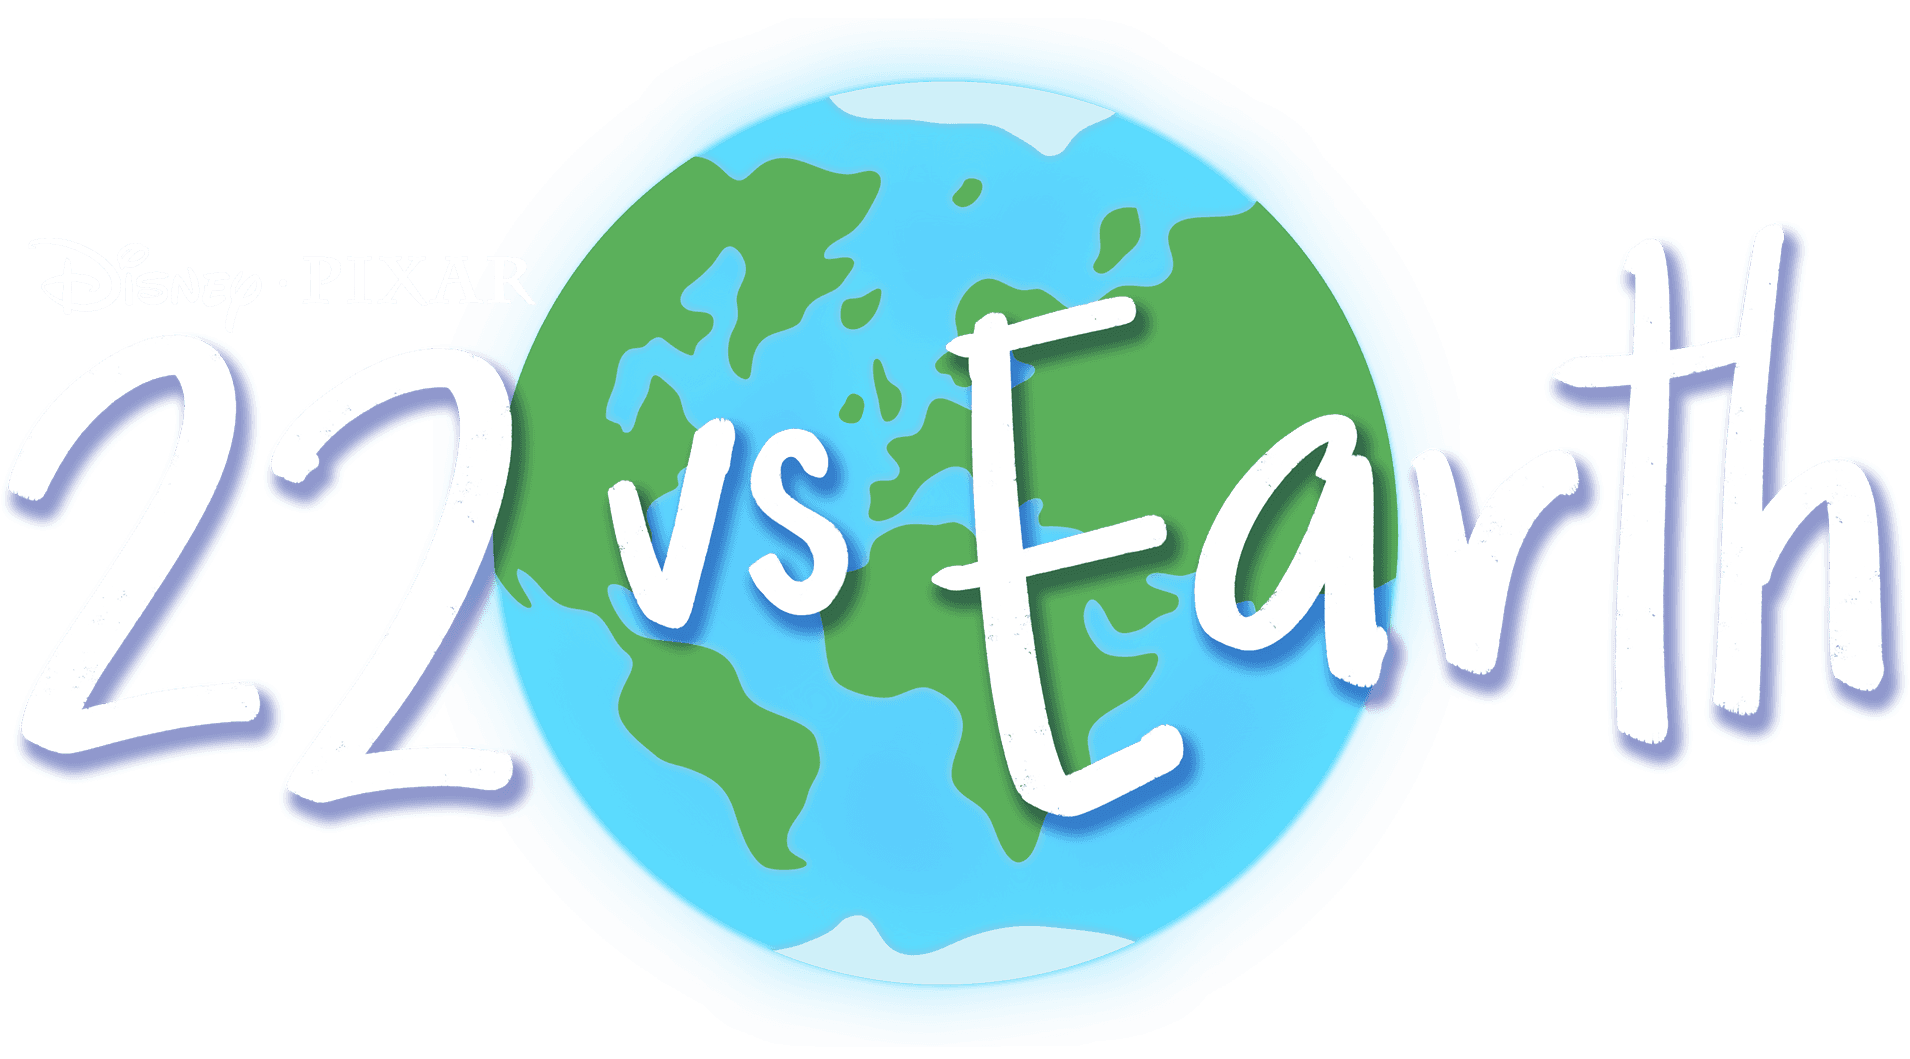 22 vs. Earth logo